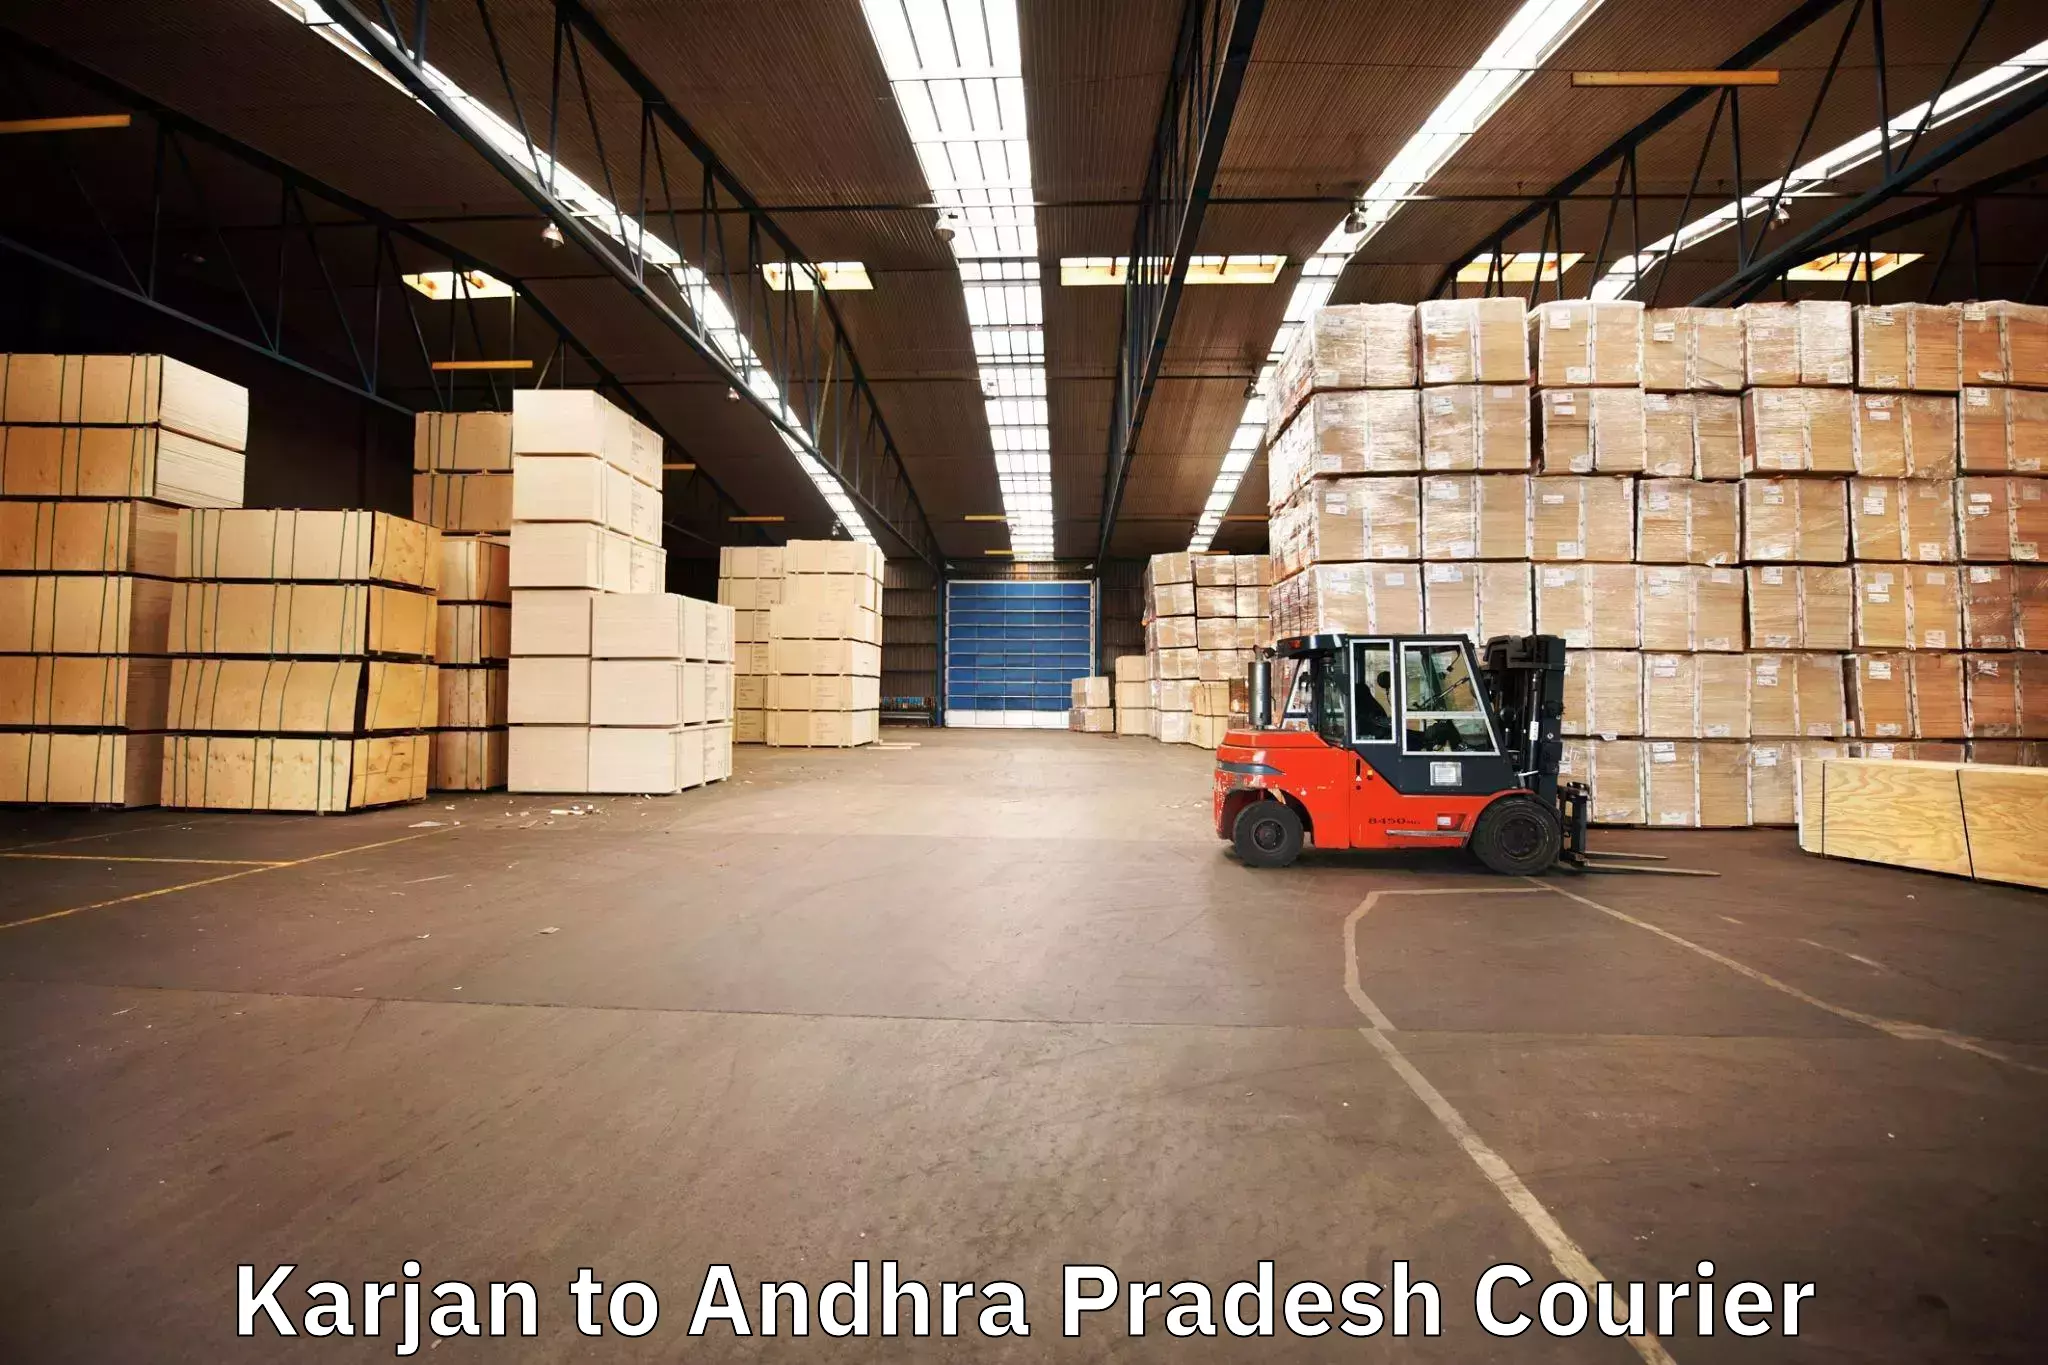 Furniture moving experts Karjan to Andhra Pradesh